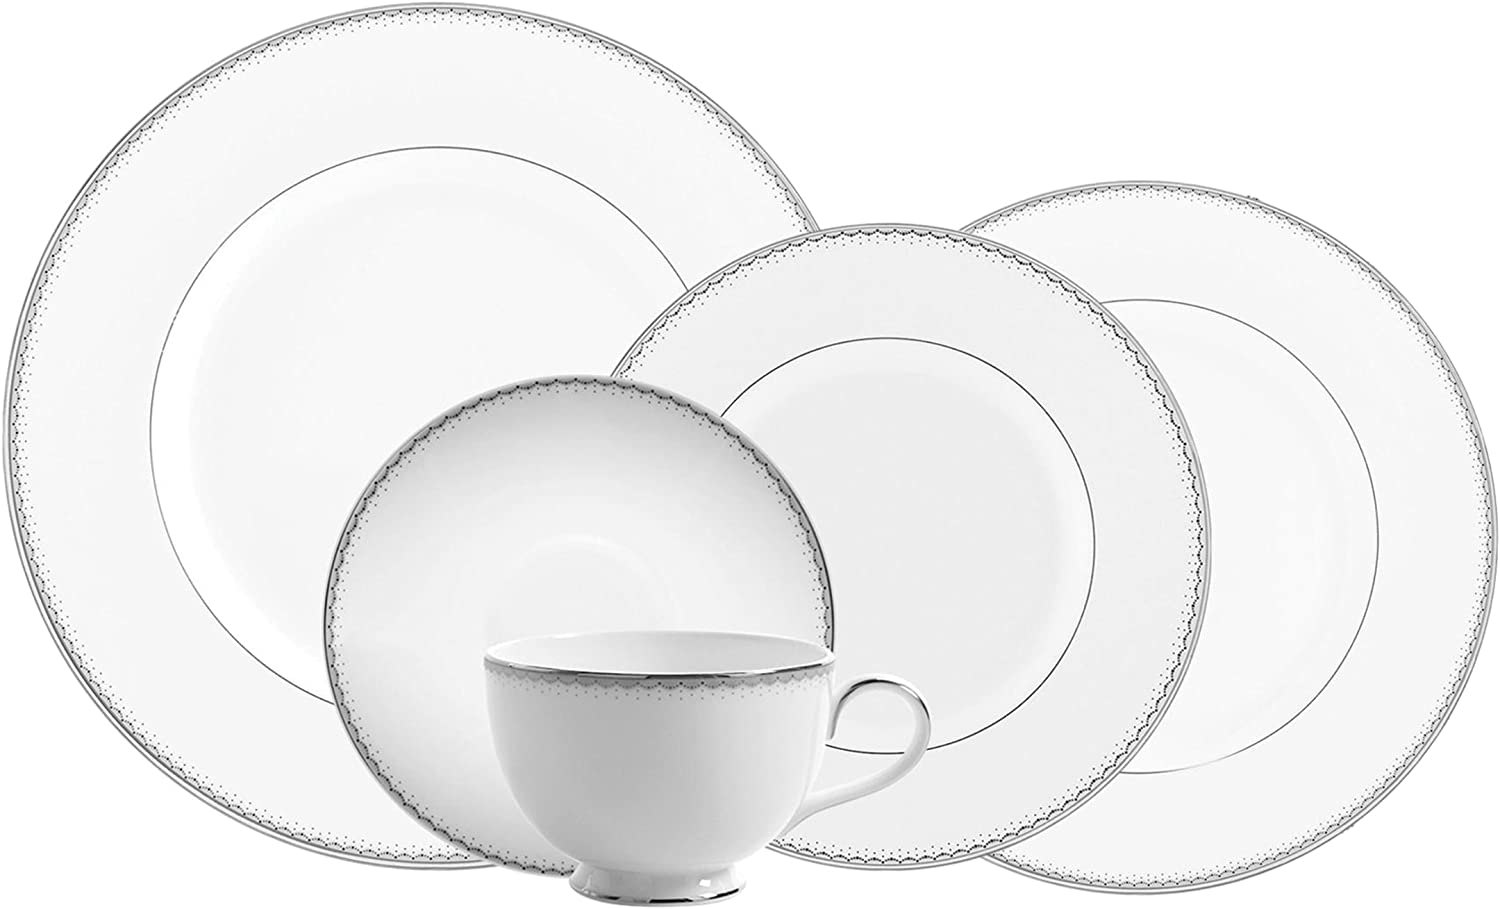 Картинка посуды на прозрачном фоне